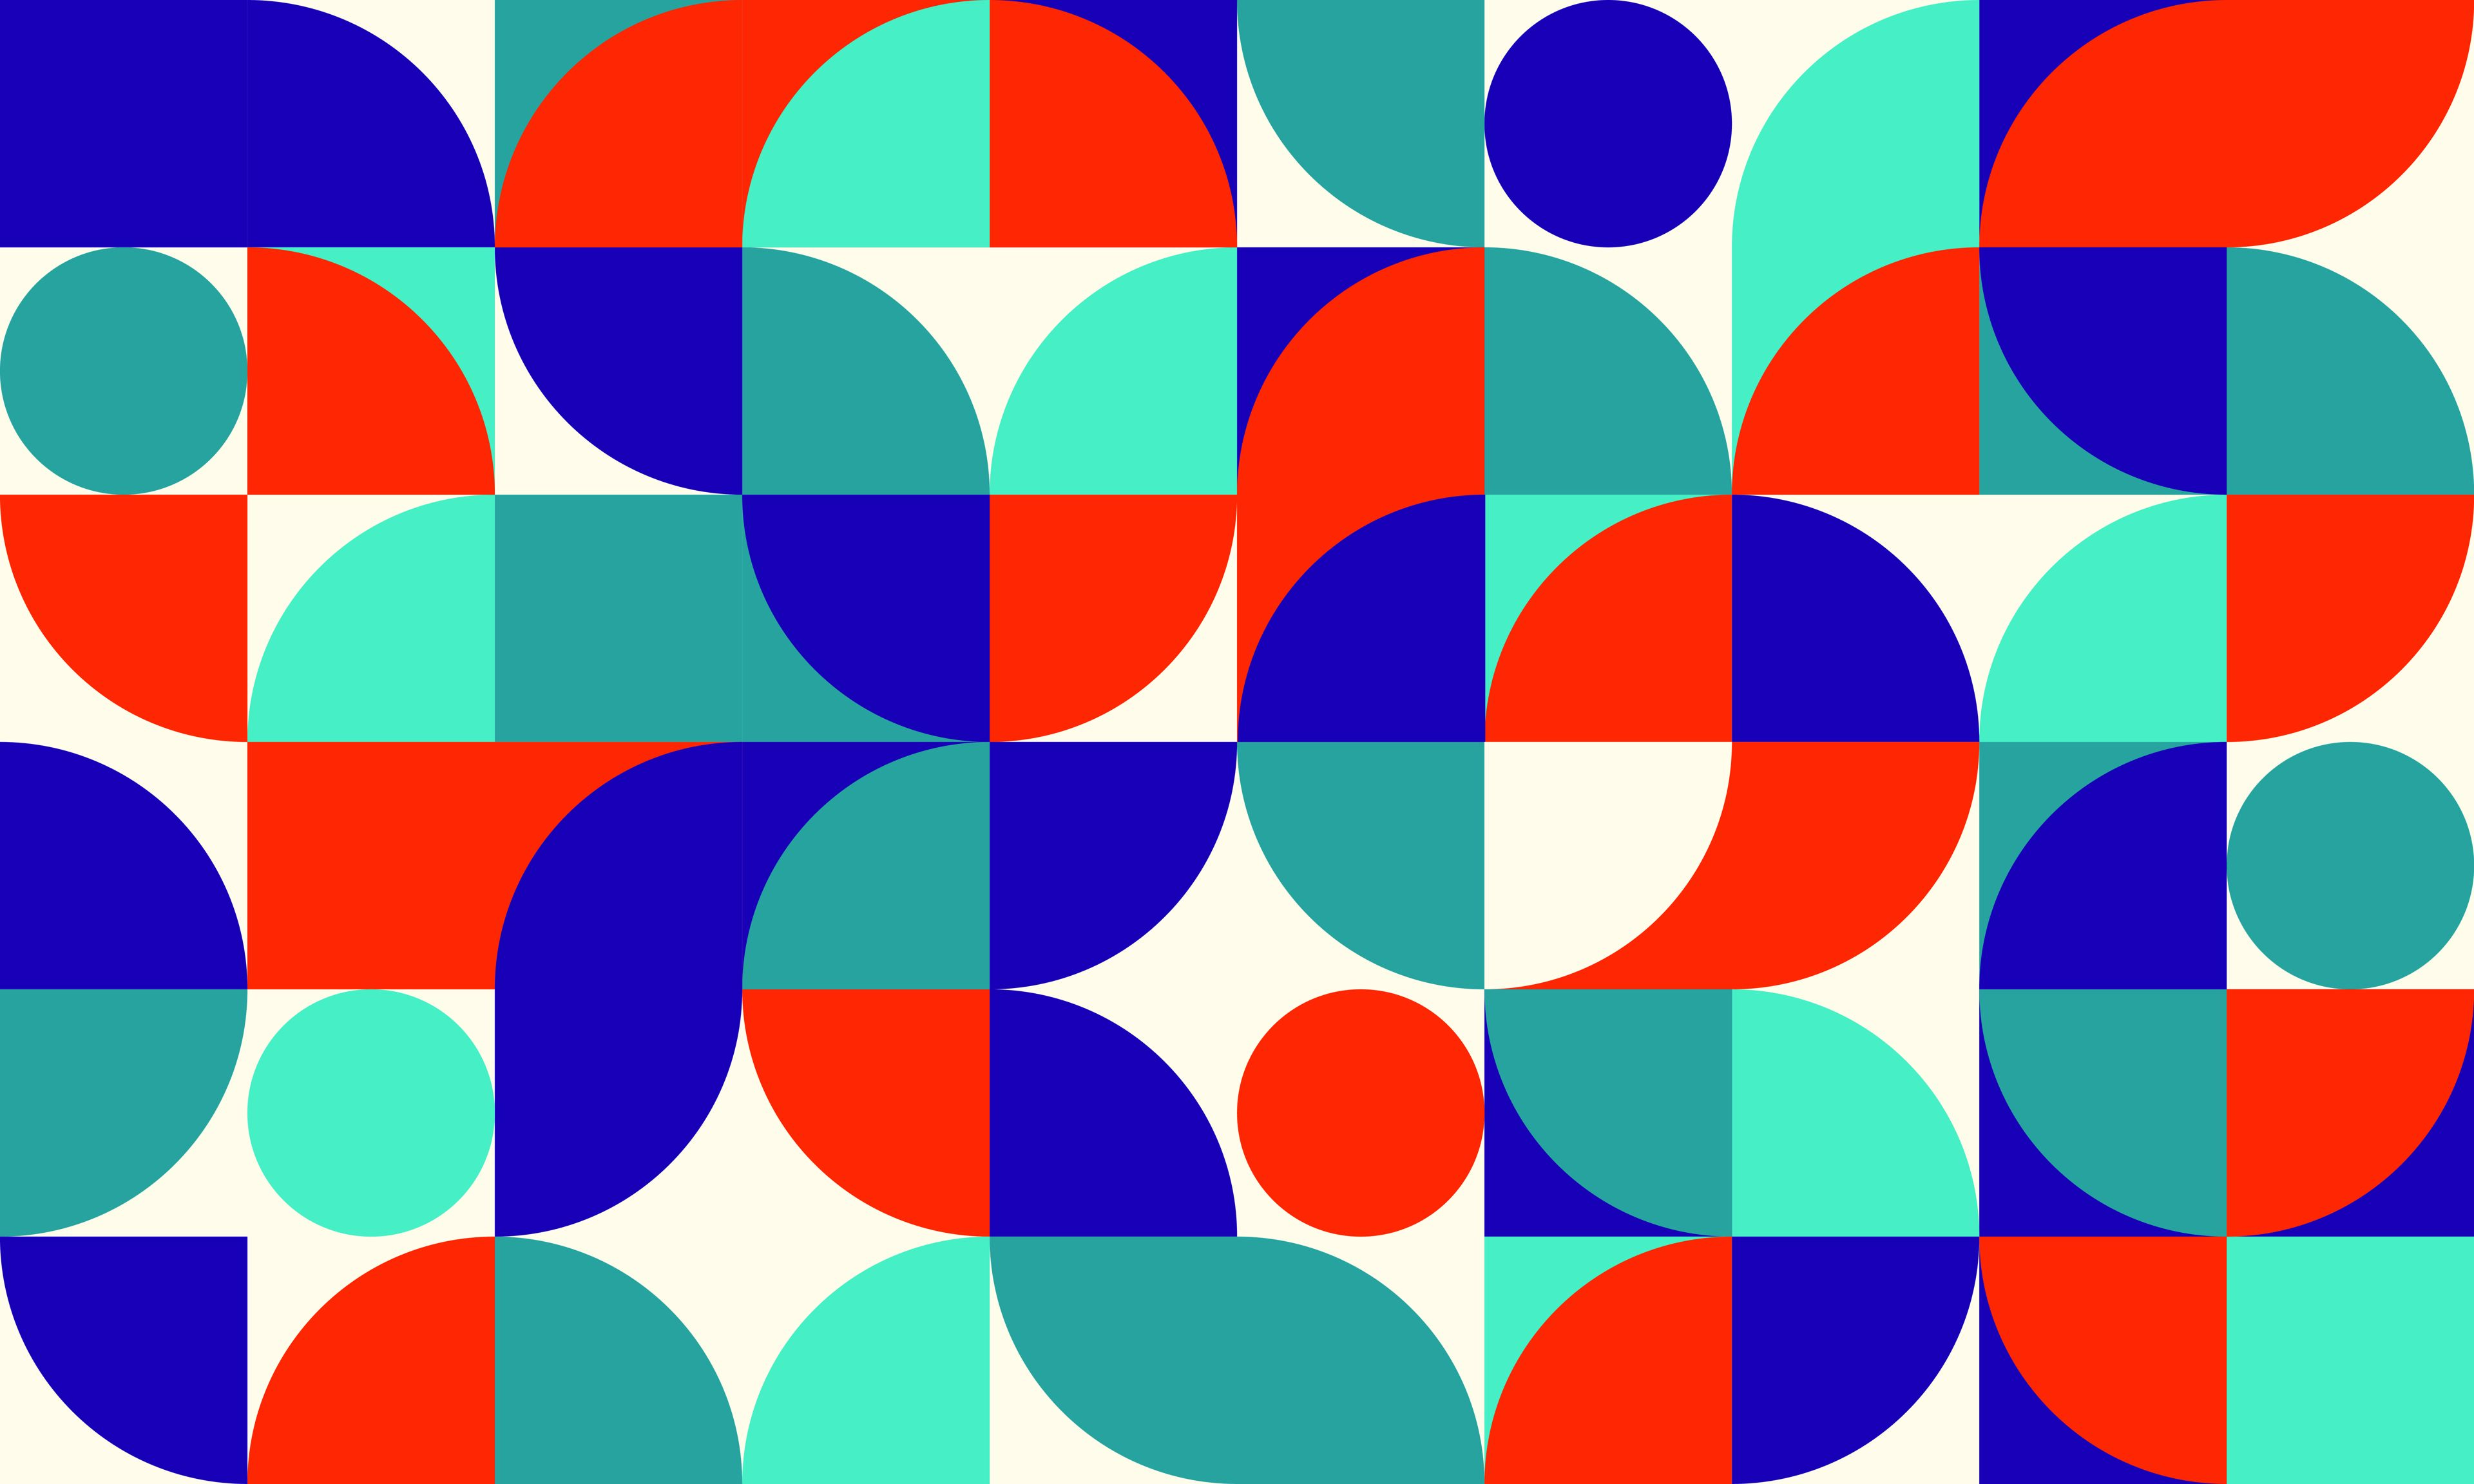 Diseño abstracto moderno con círculos y cuadrados superpuestos en una paleta vibrante de naranja, azul, morado y blanco.